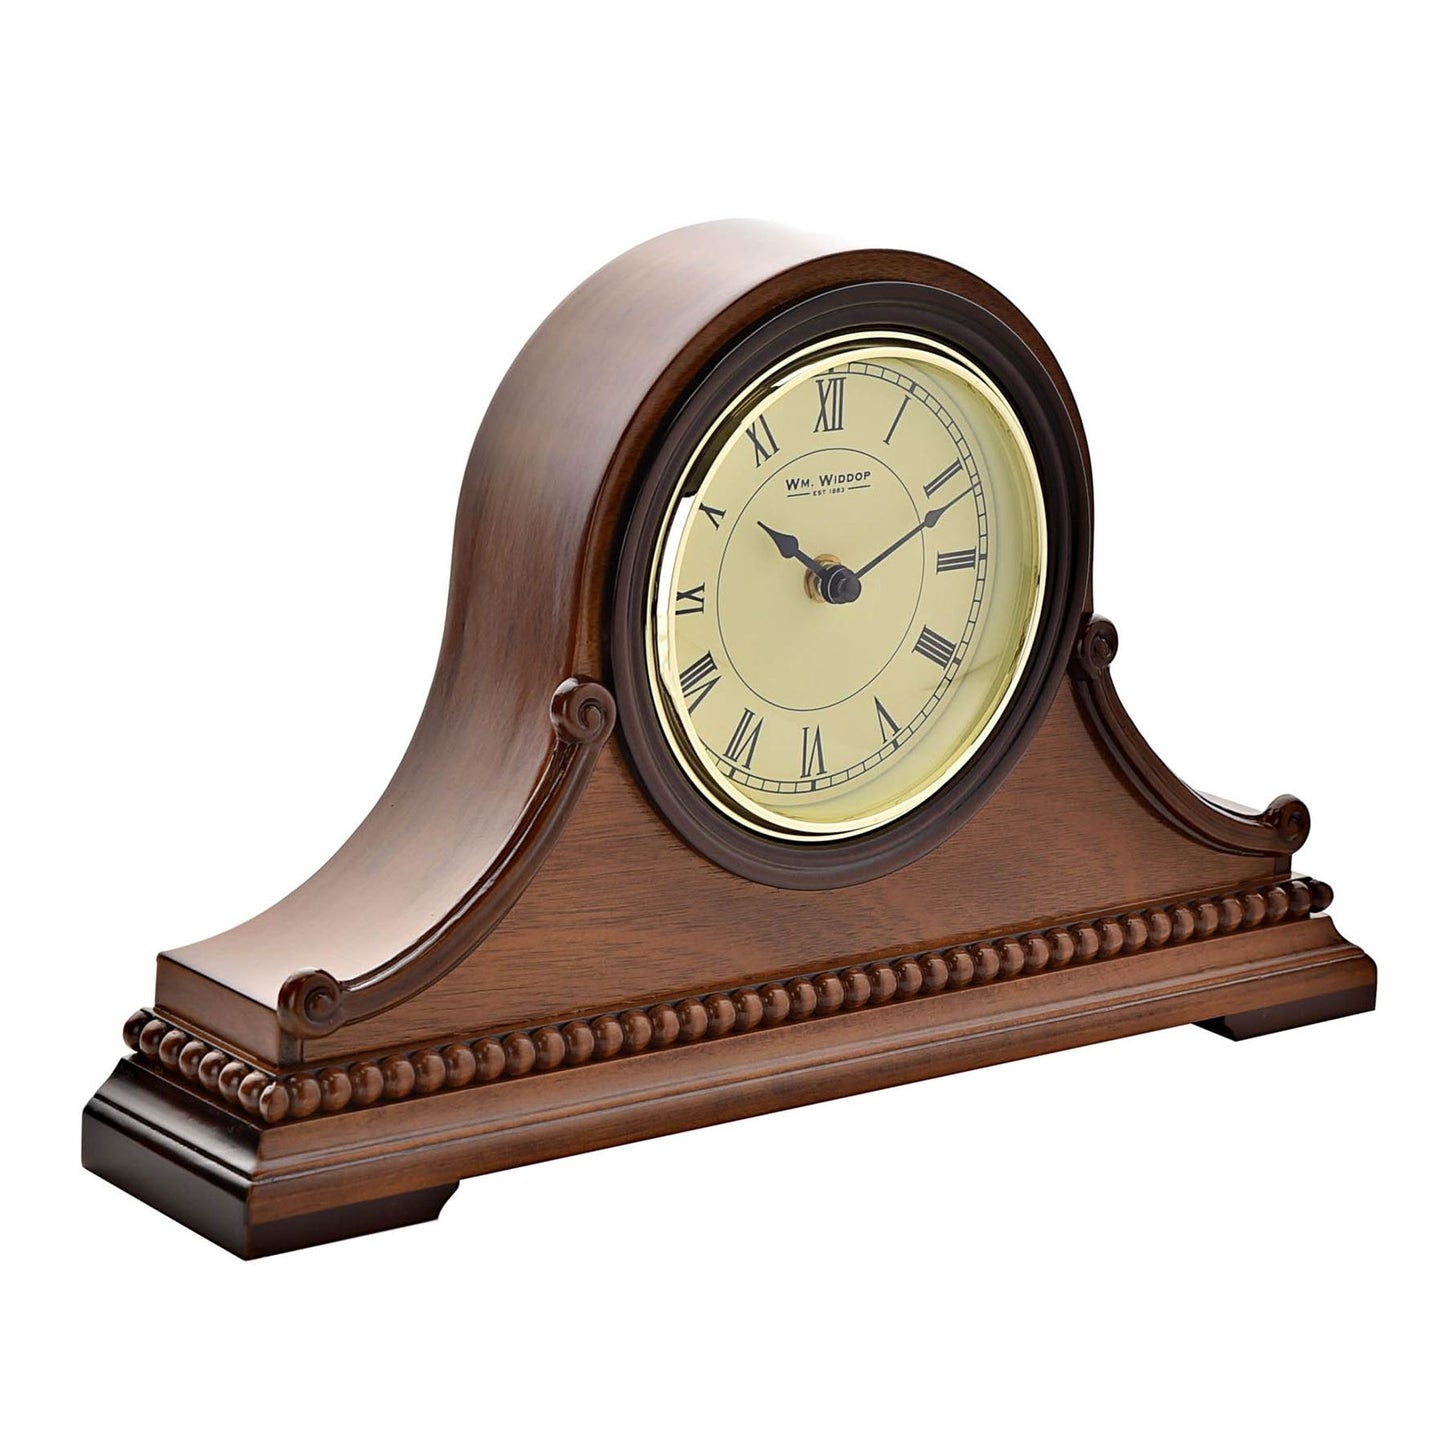 Wm.Widdop Wooden Napoleon Mantel Clock